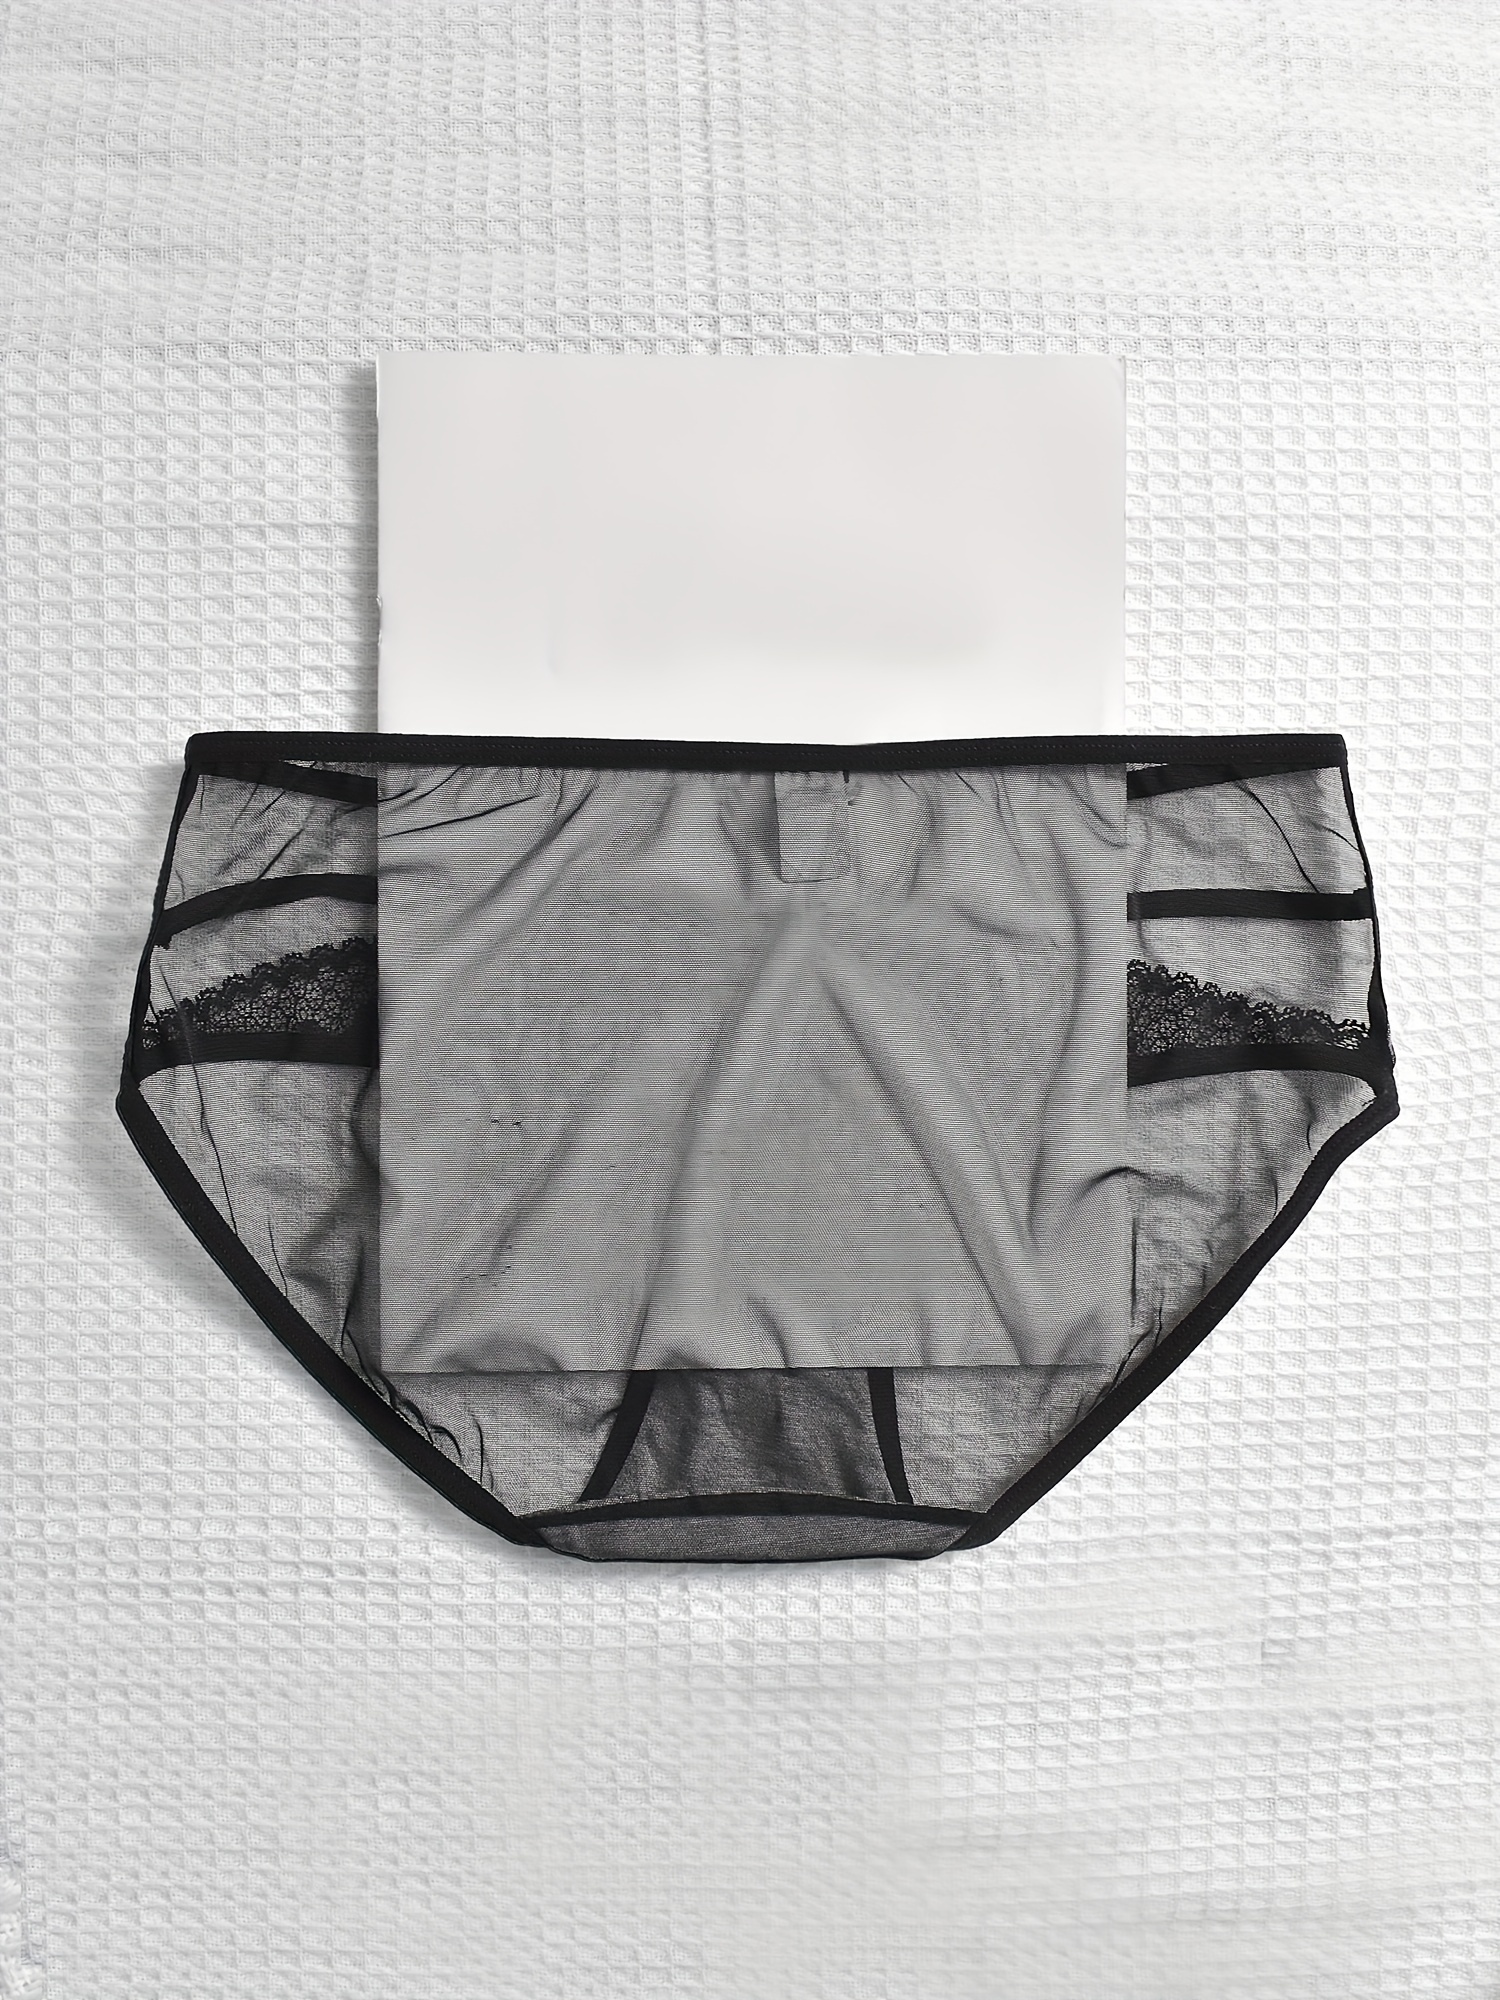 4 Pack Plus Size Sexy Panties Set, Women's Plus Contrast Lace High Waist  Breathable Briefs 4pcs Set